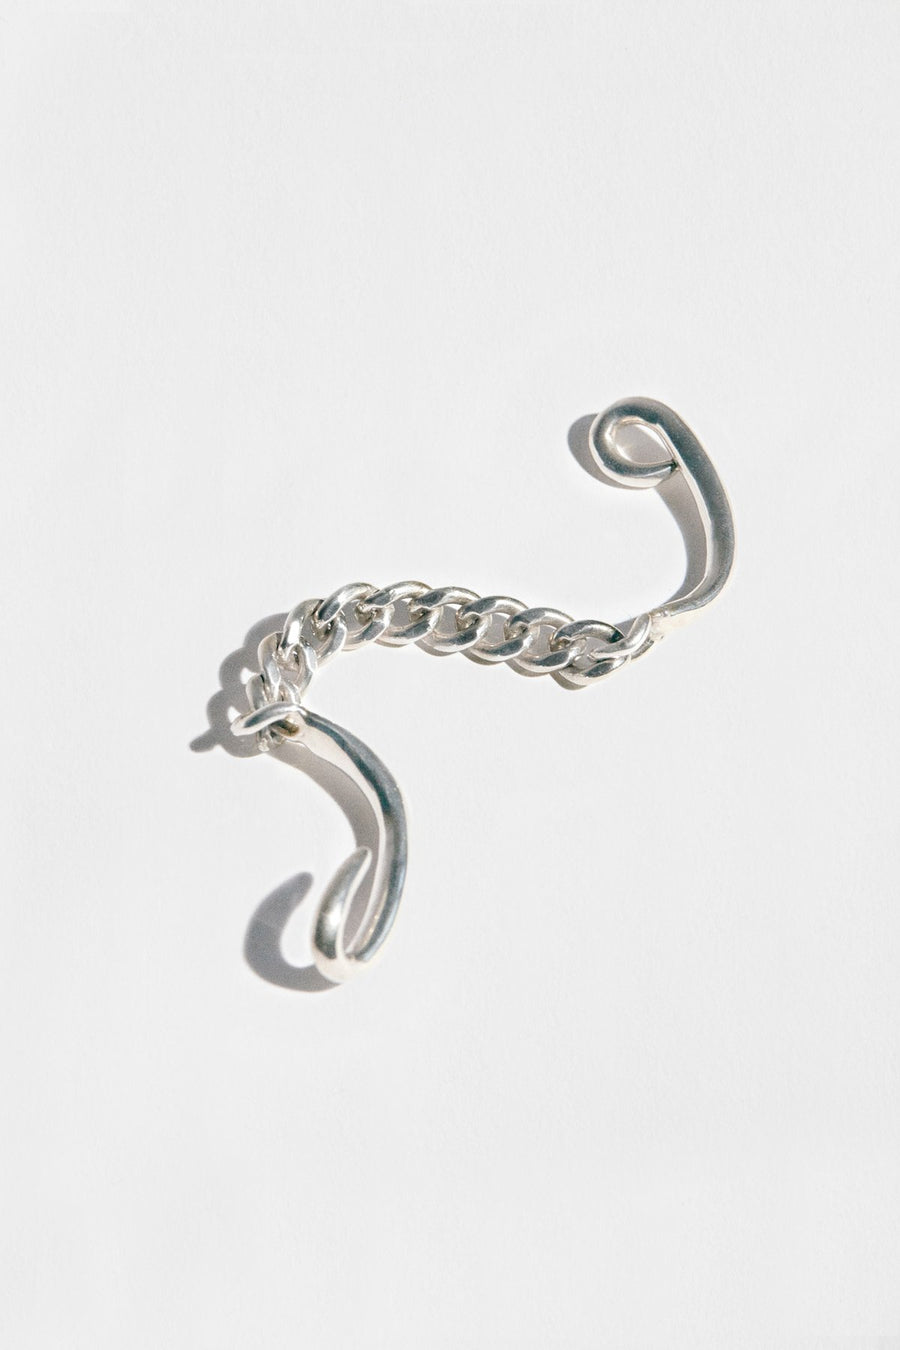 Hook Bracelet by Hernán Herdez